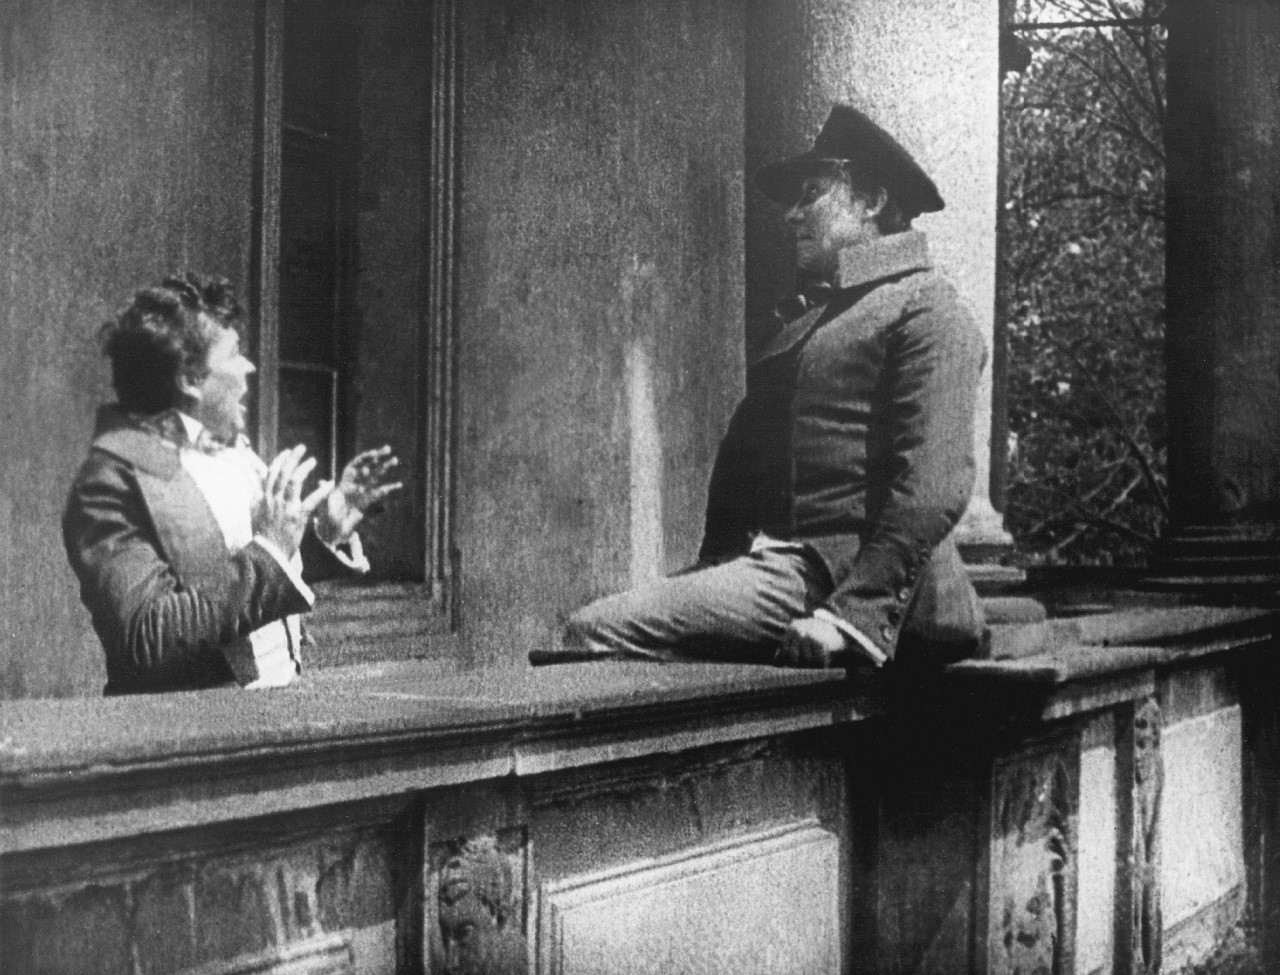 Paul Wegener as Balduin and doppelganger in The Student of Prague (1913)